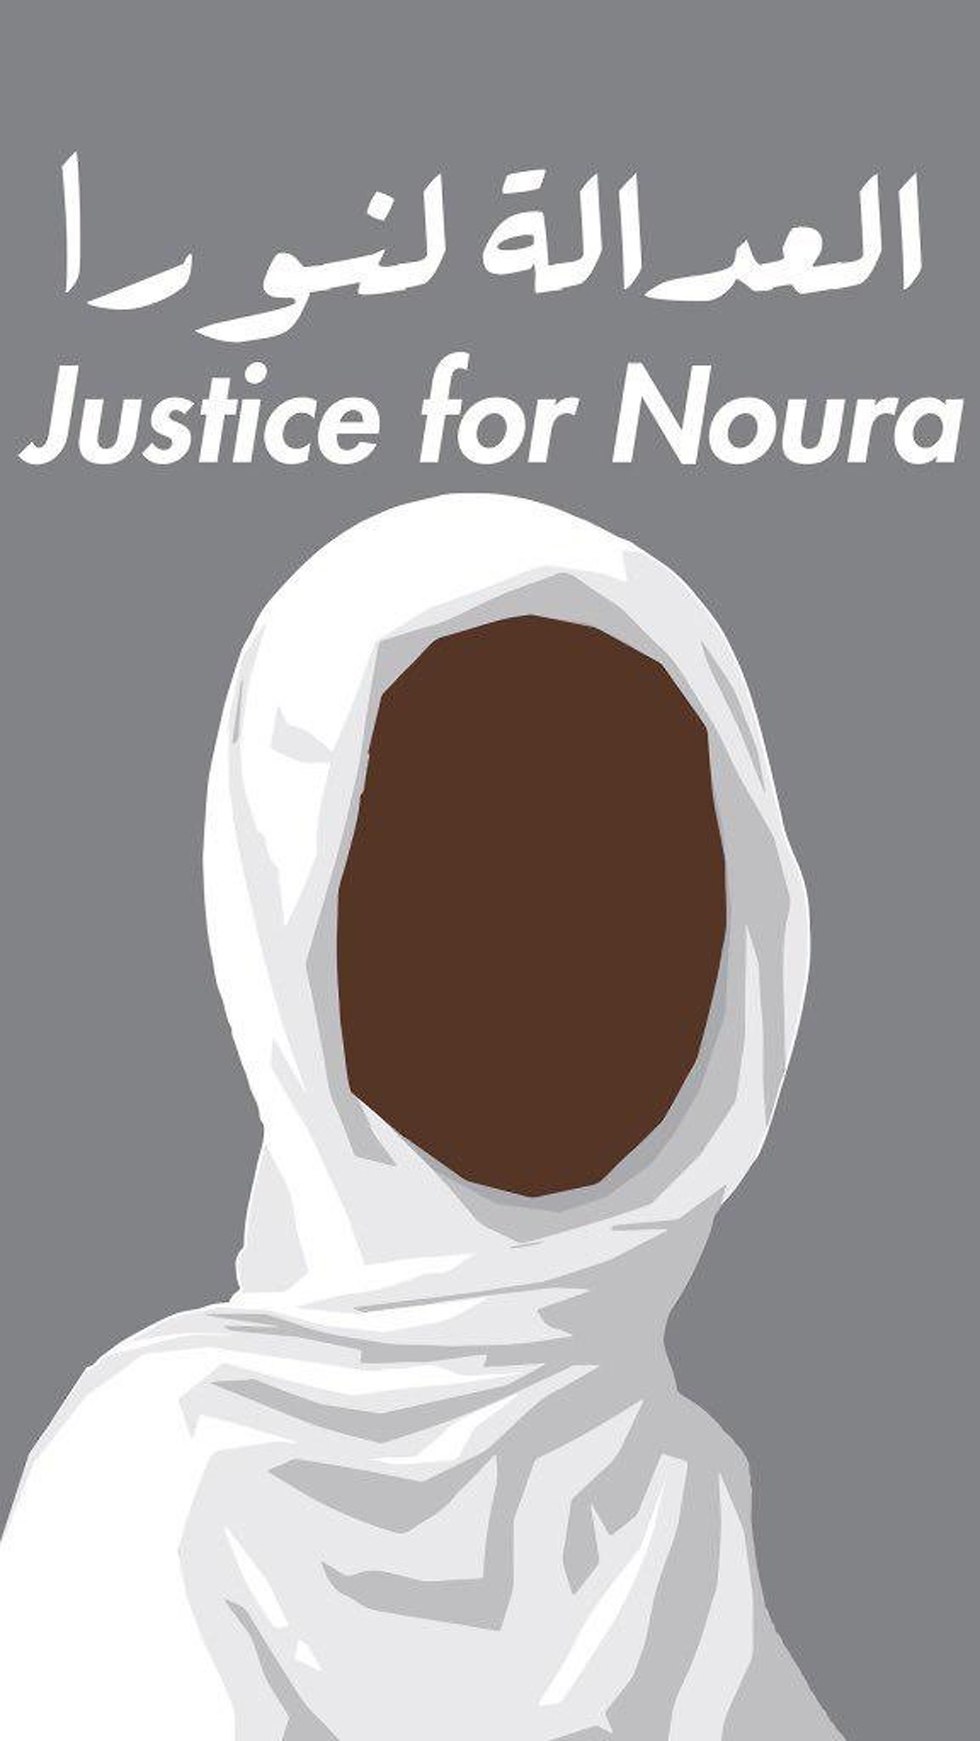 בית משפט בסודן שפט עונש מוות ()